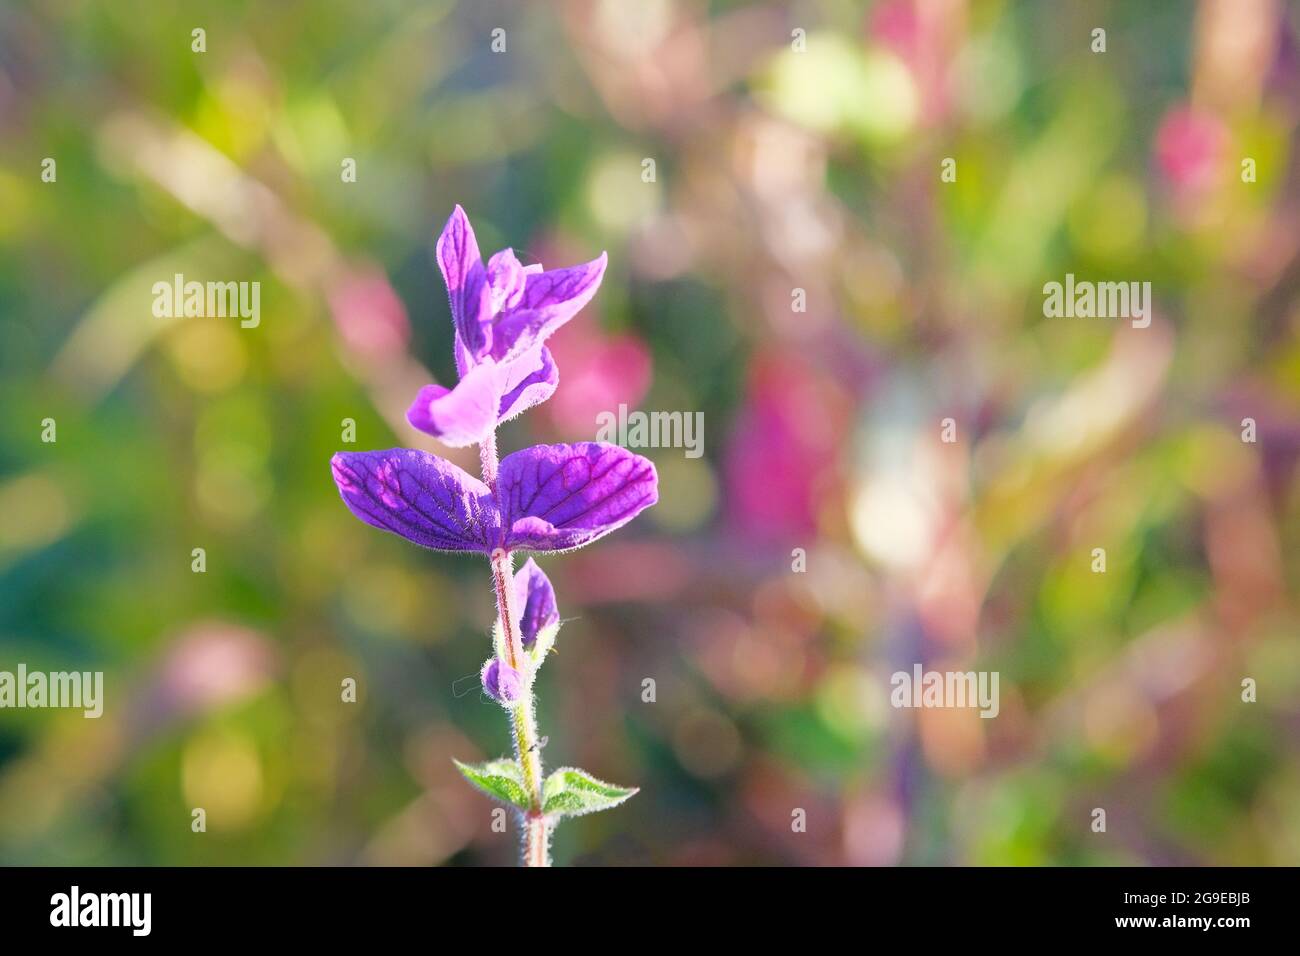 Fleur violette en fleur sur fond flou et lumineux. Reflets du soleil sur les pétales de fleur violette au printemps. Copier l'espace. Banque D'Images